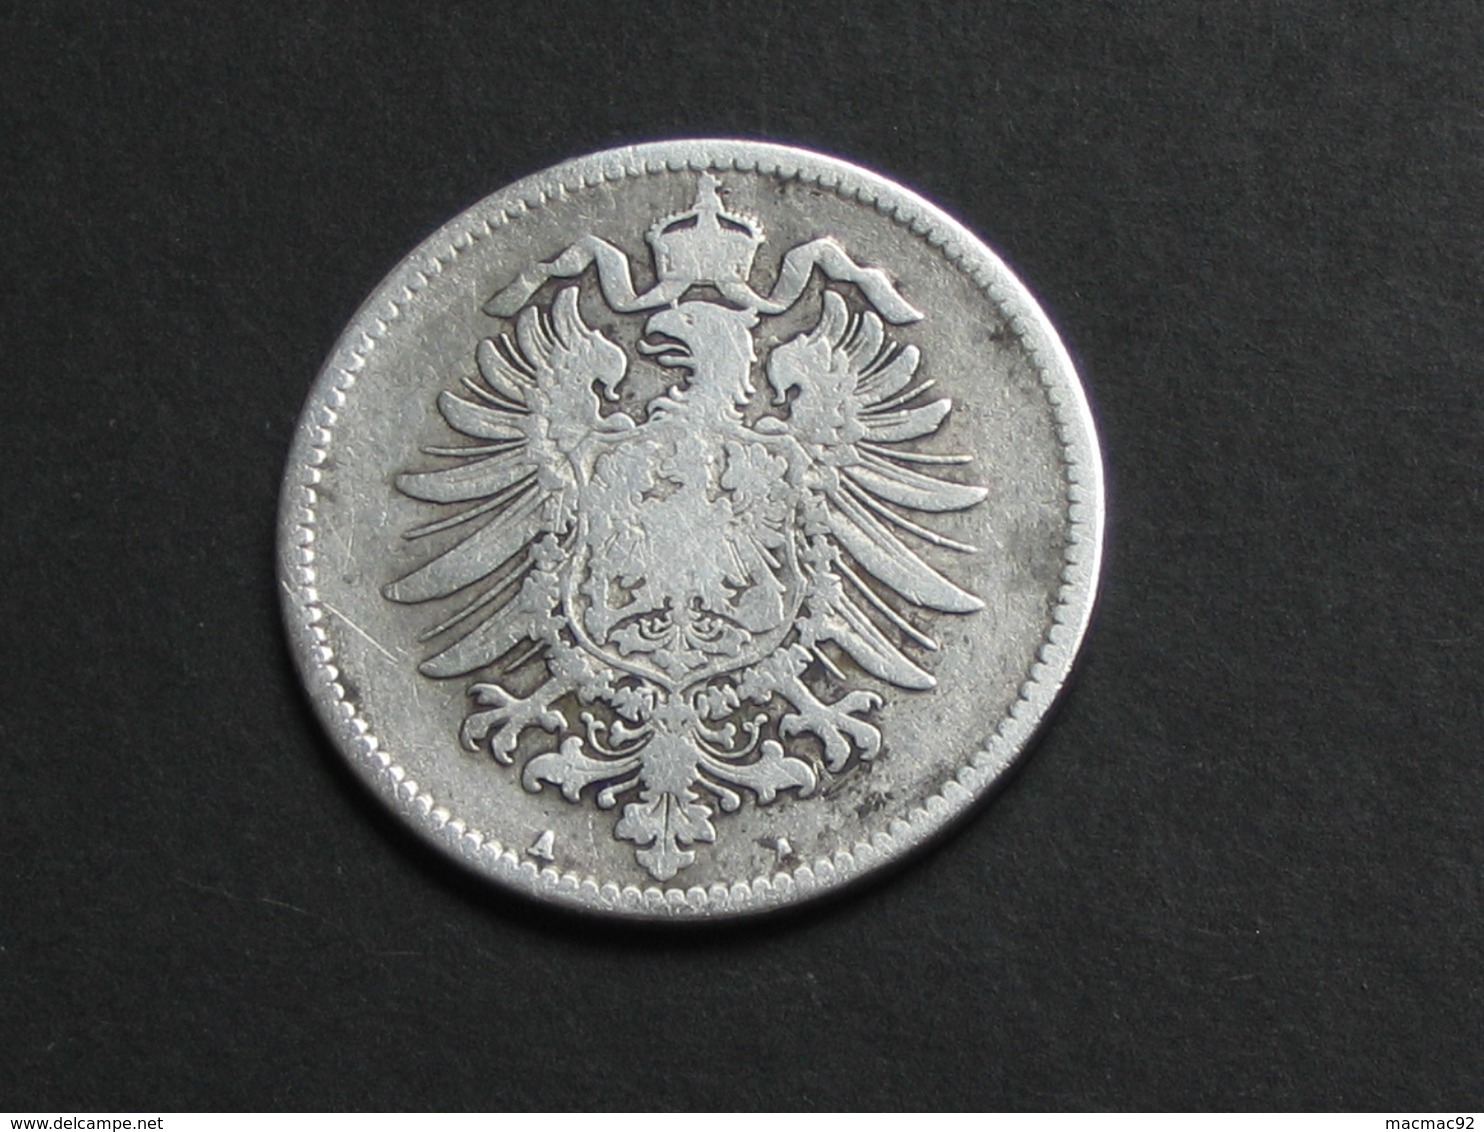 1 Mark 1875 A - Germany  - ALLEMAGNE - Deutsches Reich **** EN ACHAT IMMEDIAT ***** - 1 Mark